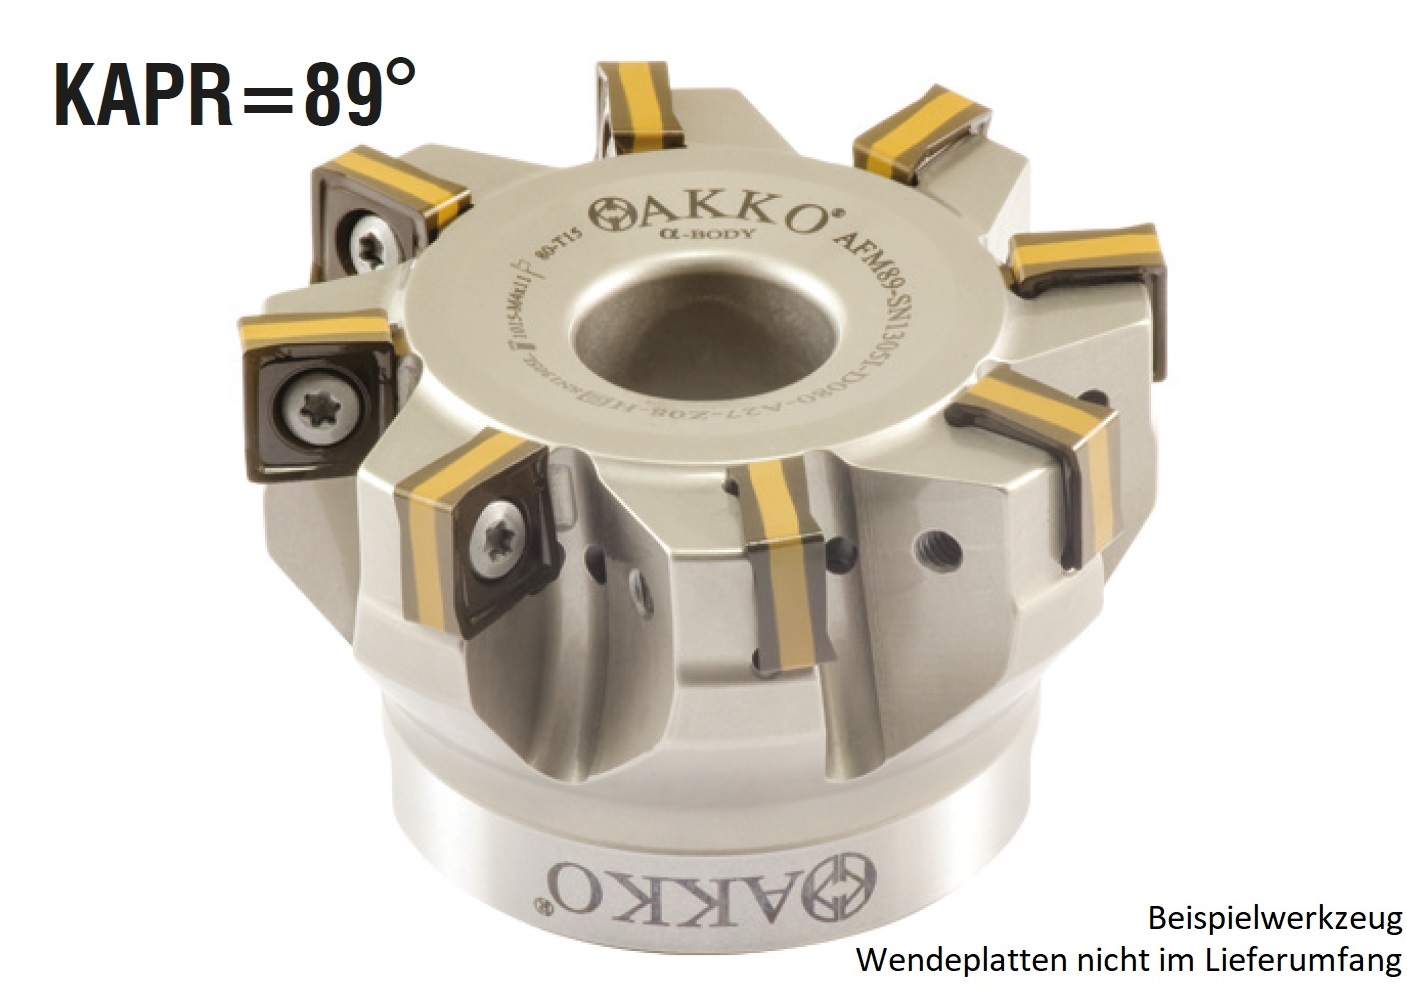 AKKO-Eckmesserkopf ø 63 mm, 89° Anstellwinkel, kompatibel mit Iscar SNMU 1305..
Schaft-Ausführung ø 22 mm (Typ A), mit Innenkühlung, Z=6